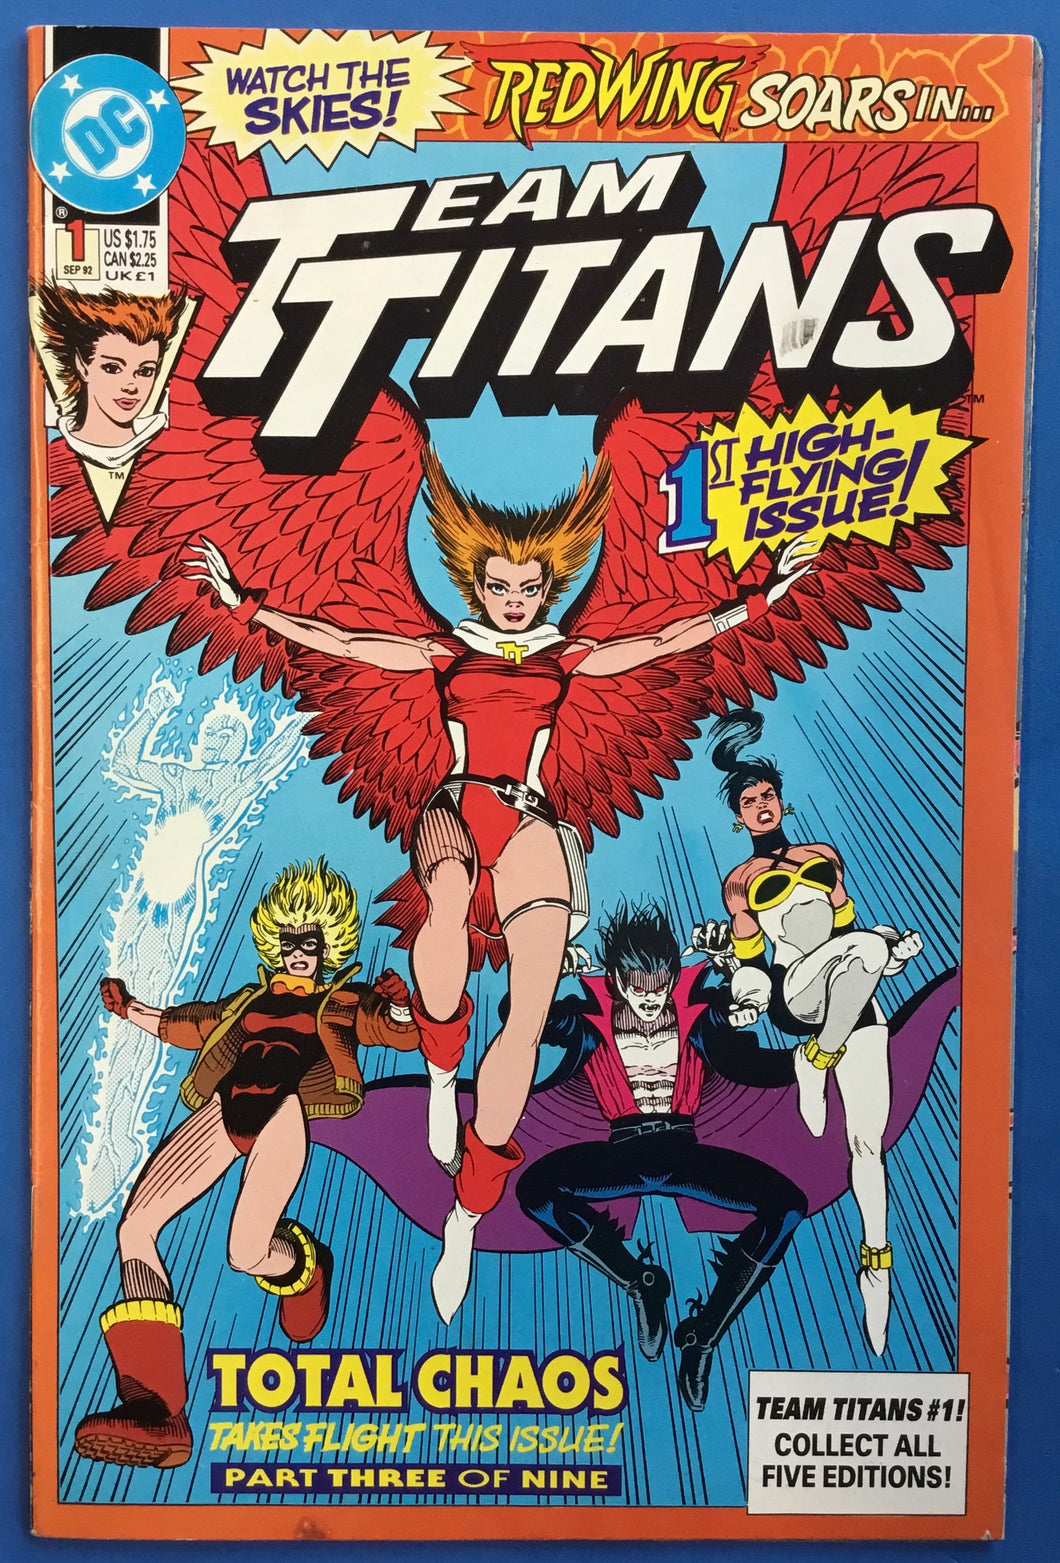 Team Titans No. #1 (High-Flying) 1992 DC Comics